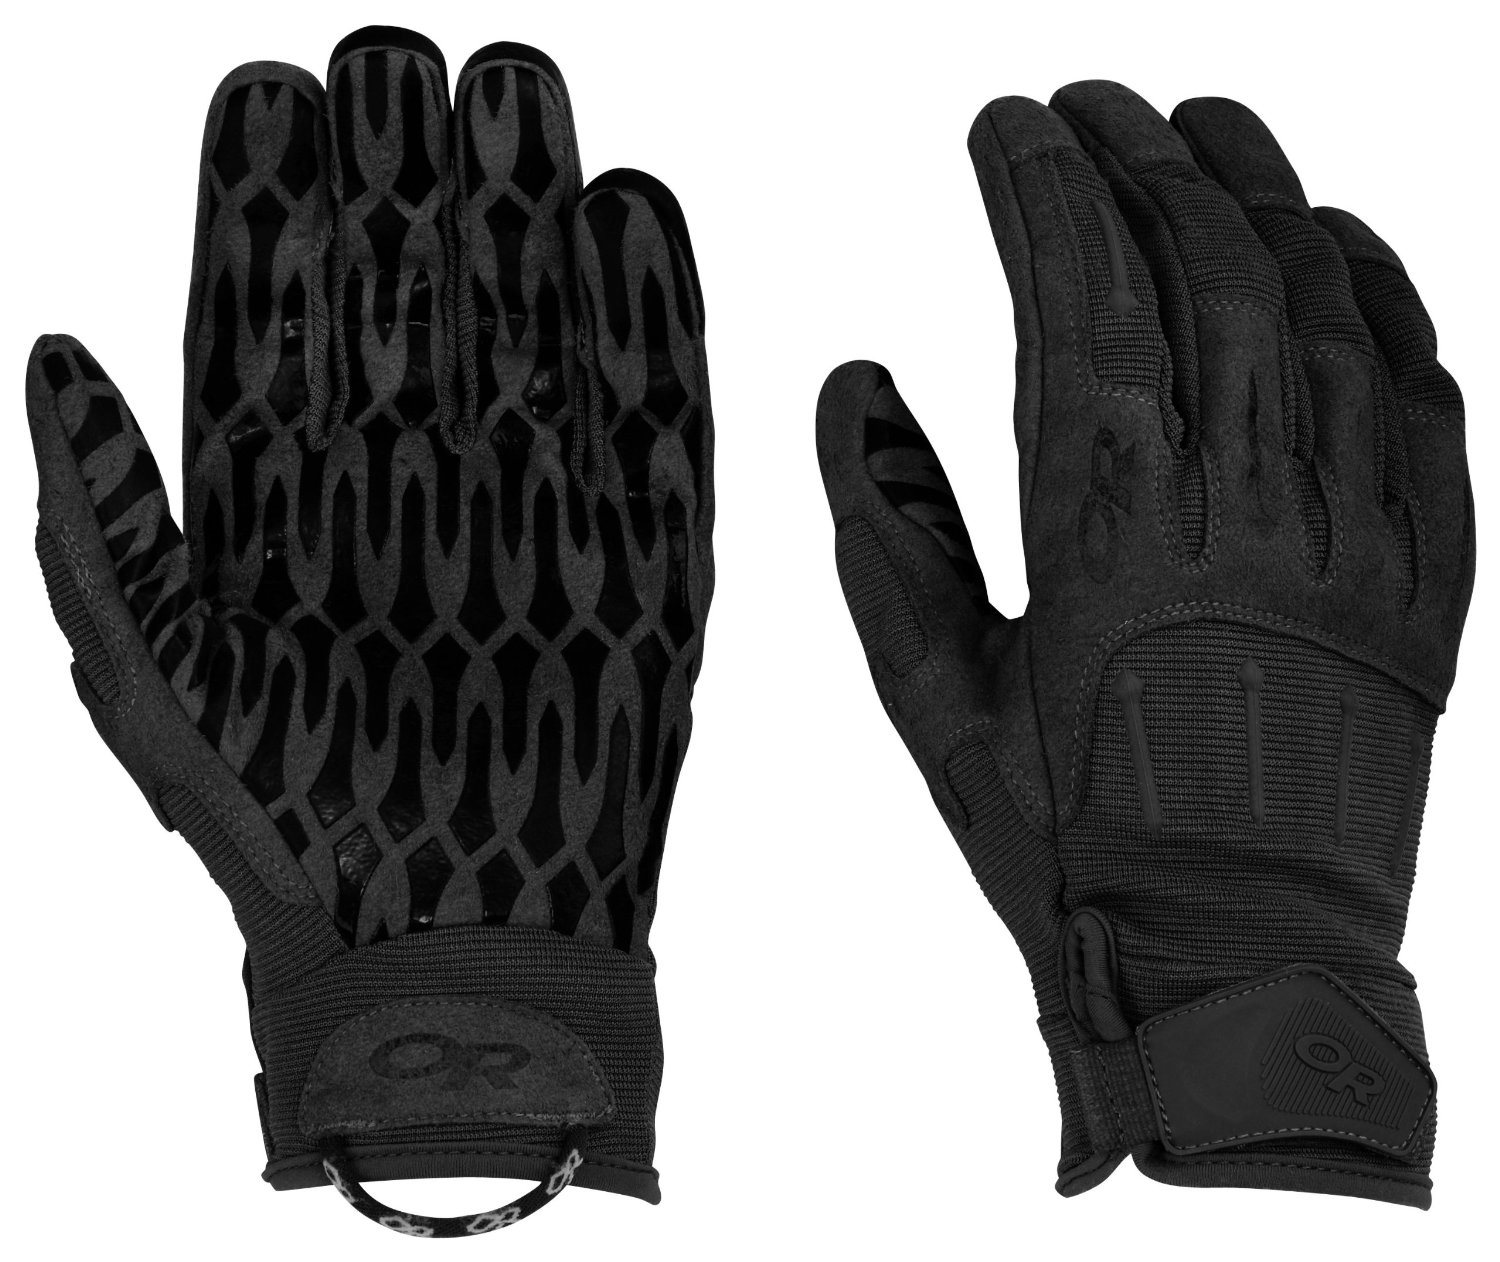 Нижние перчатки купить. Перчатки Outdoor research Ironsight Gloves. Перчатки Outdoor research Harricane Gloves Coyote 72600. Тактические перчатки Ironsight Outdoor research. Outdoor research Ironsight.